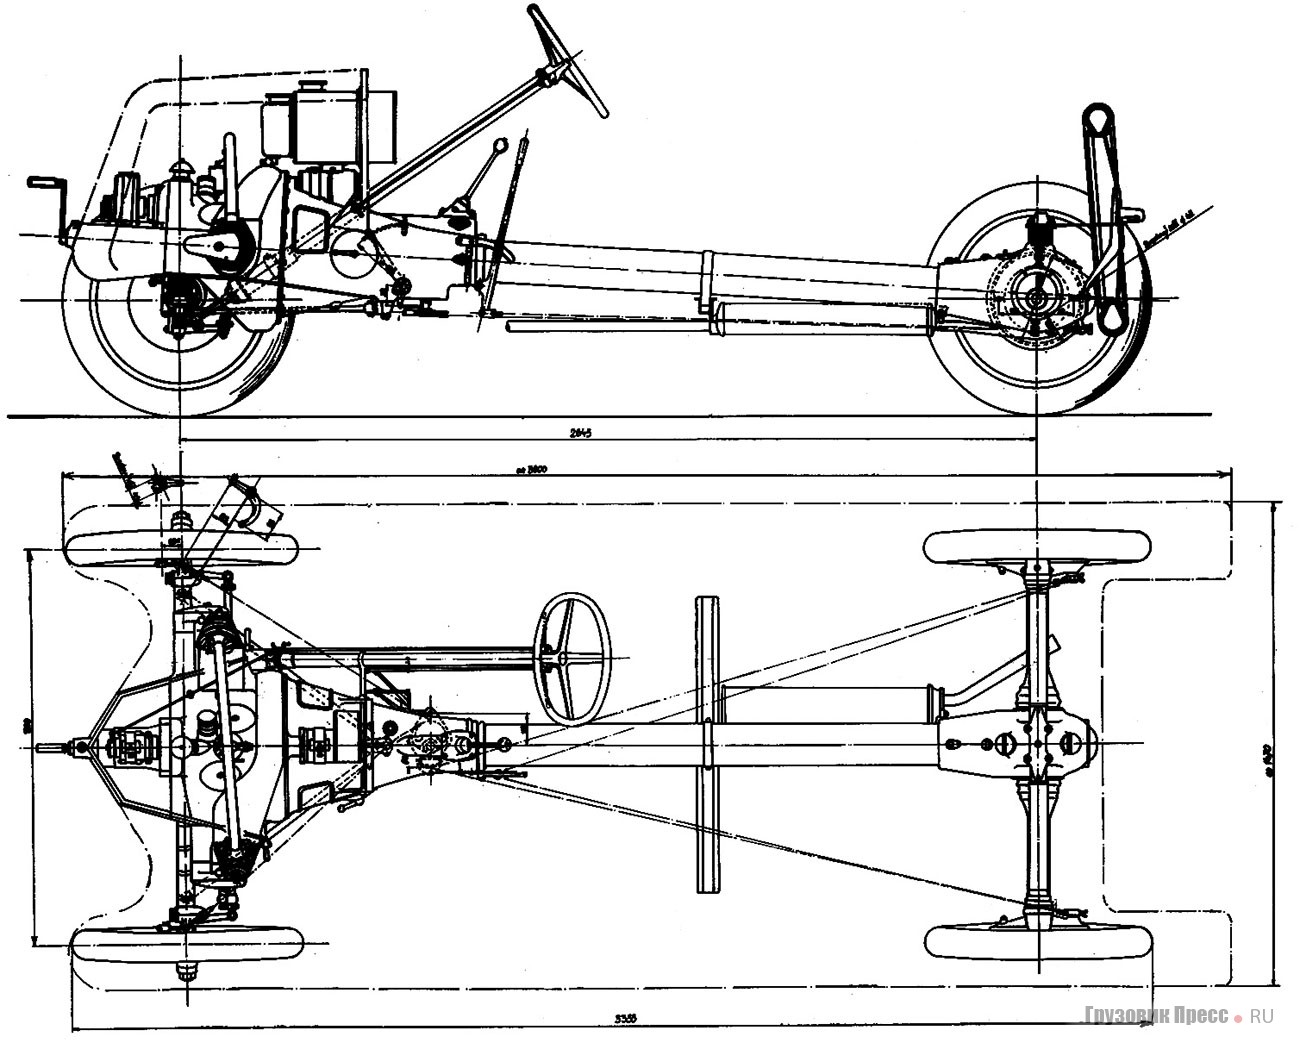 Его гениальное по простоте шасси легкового автомобиля Tatra-11 (1923 г.)